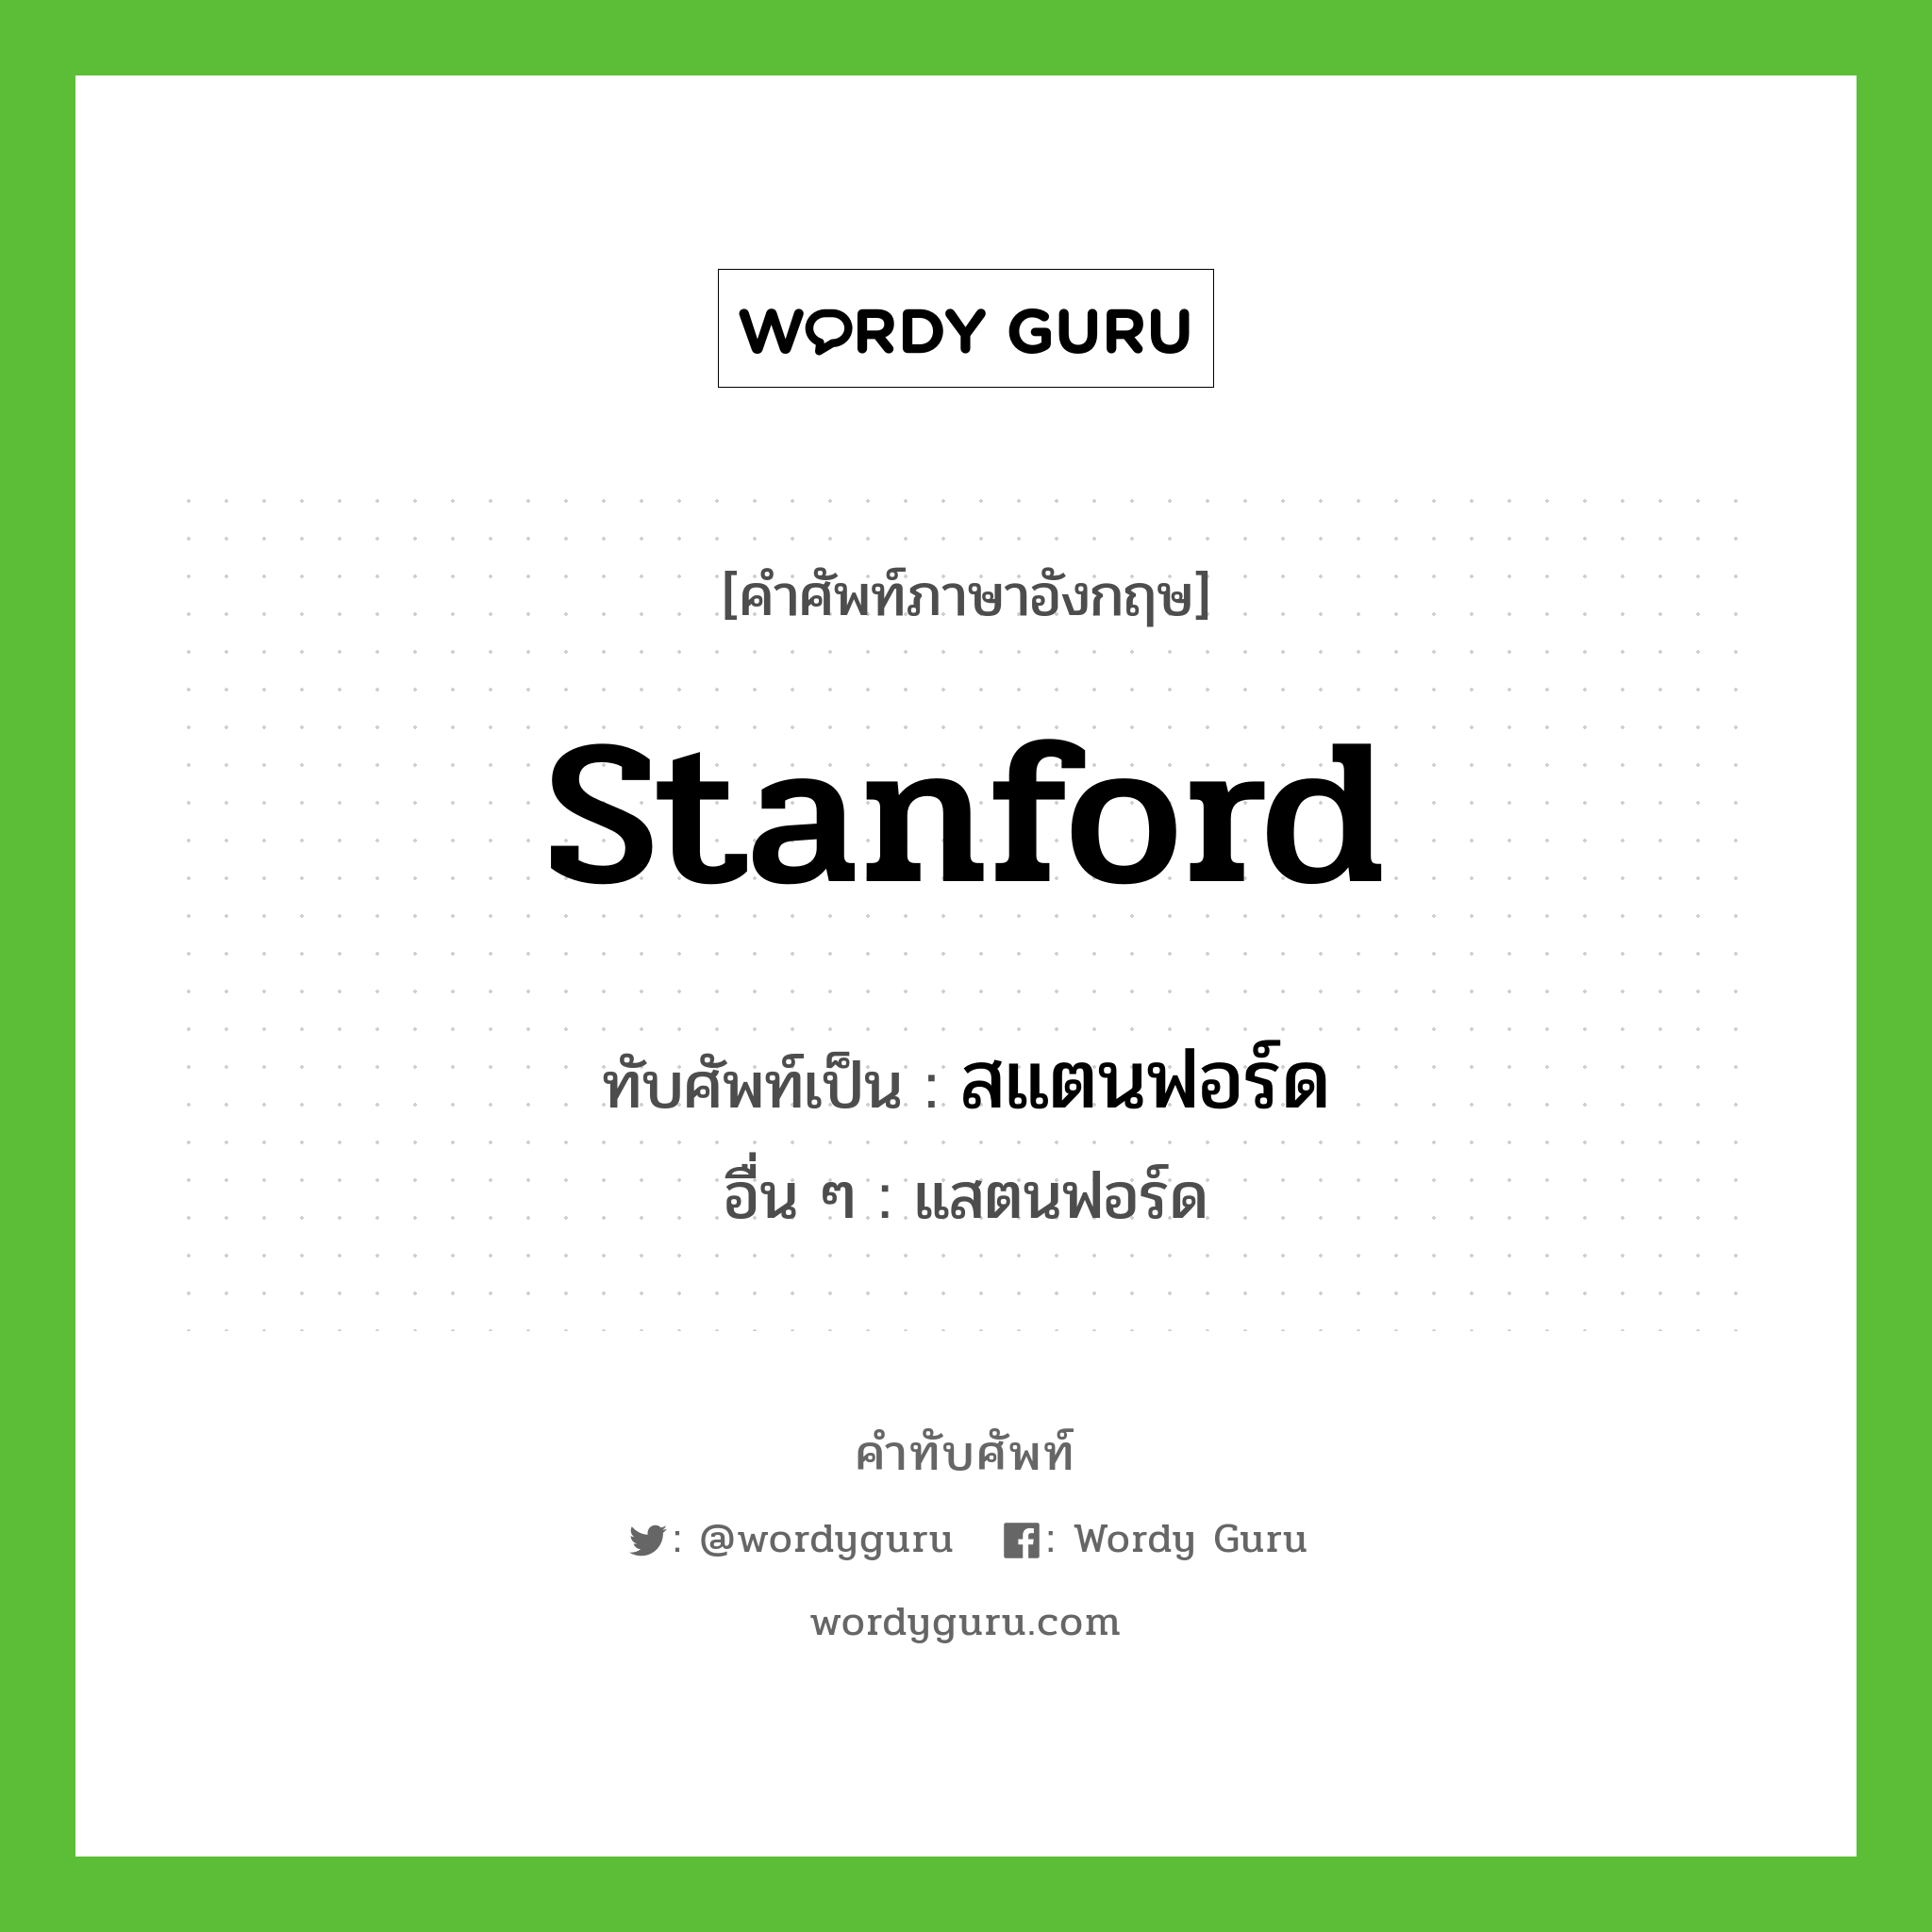 สแตนฟอร์ด เขียนอย่างไร?, คำศัพท์ภาษาอังกฤษ สแตนฟอร์ด ทับศัพท์เป็น Stanford อื่น ๆ แสตนฟอร์ด